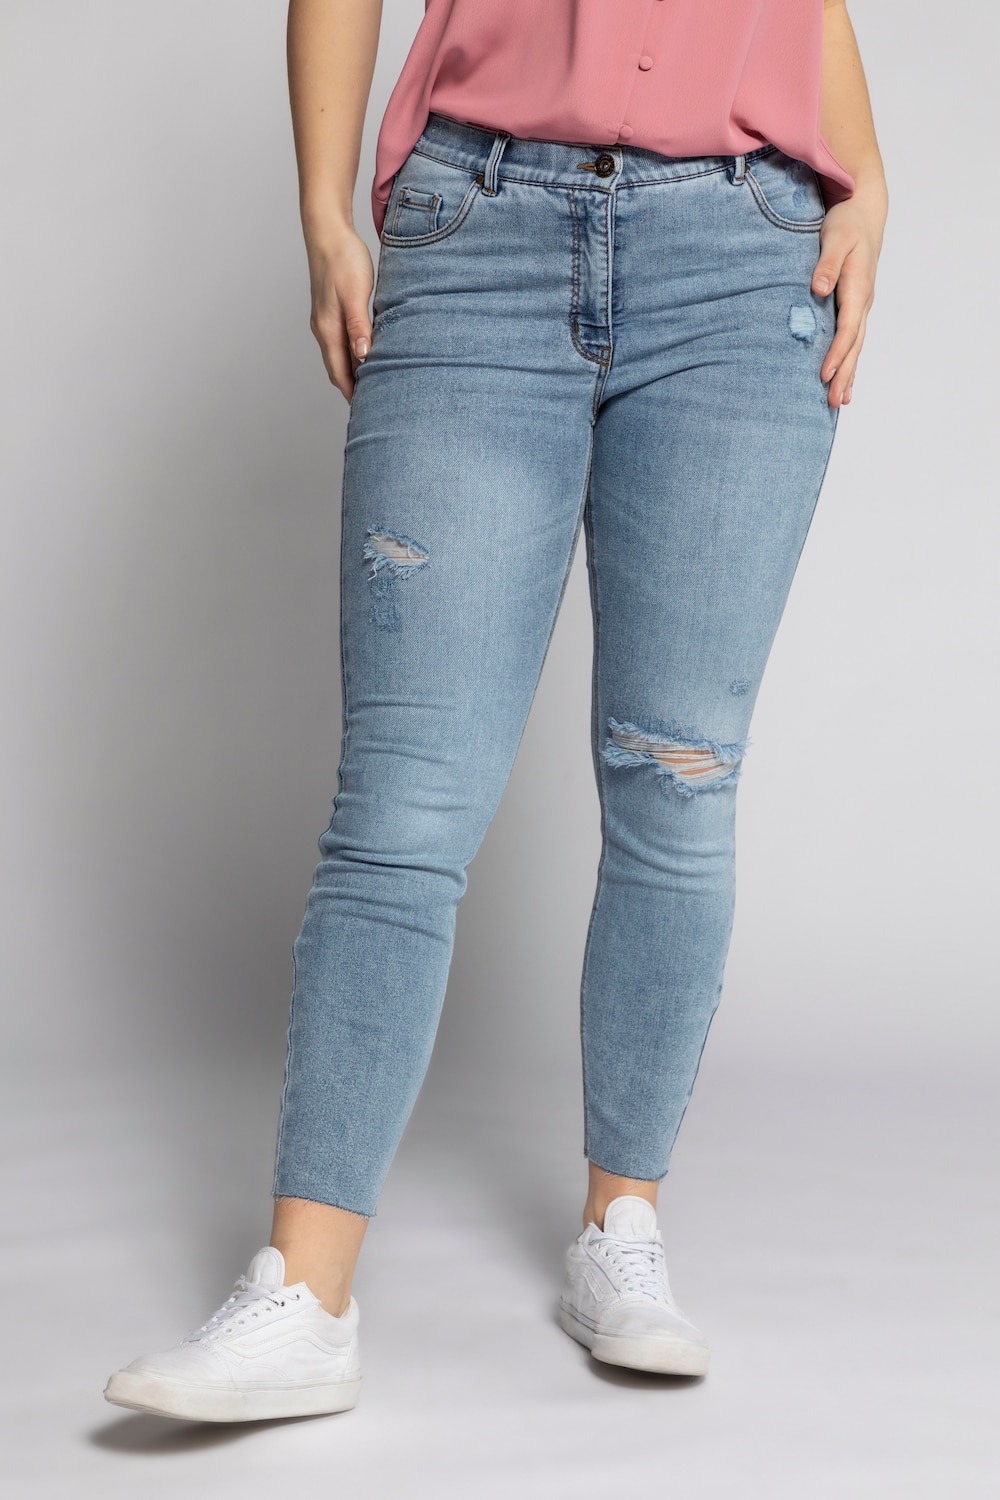 Grote Maten skinny jeans, Dames, blauw, Maat: 46, Katoen/Polyester, Studio Untold